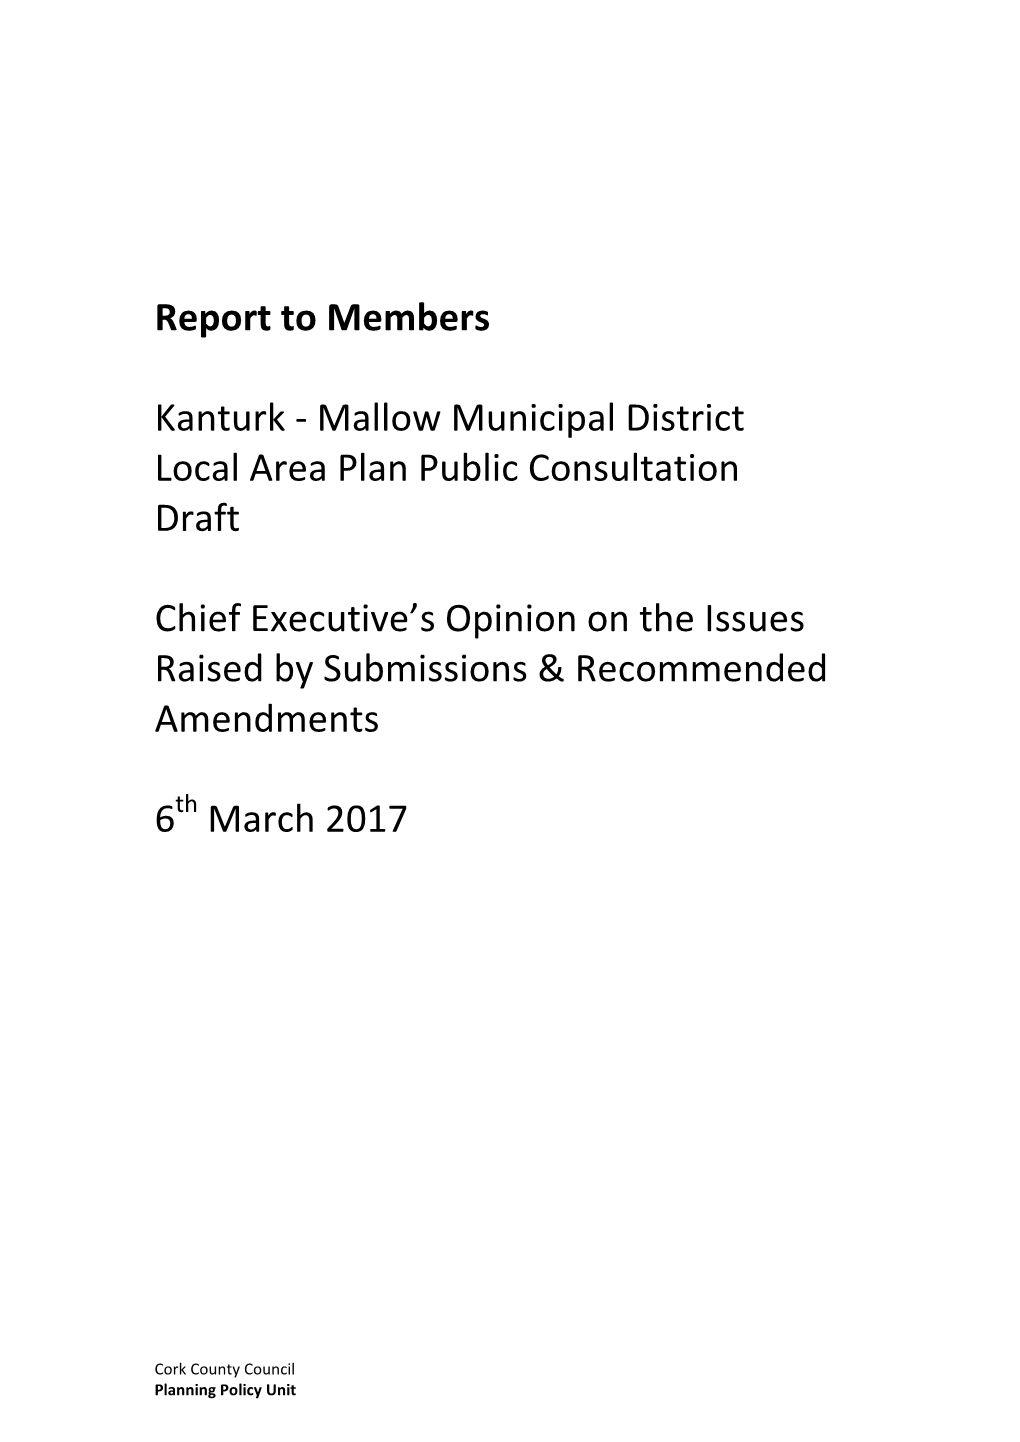 Report to Members Kanturk